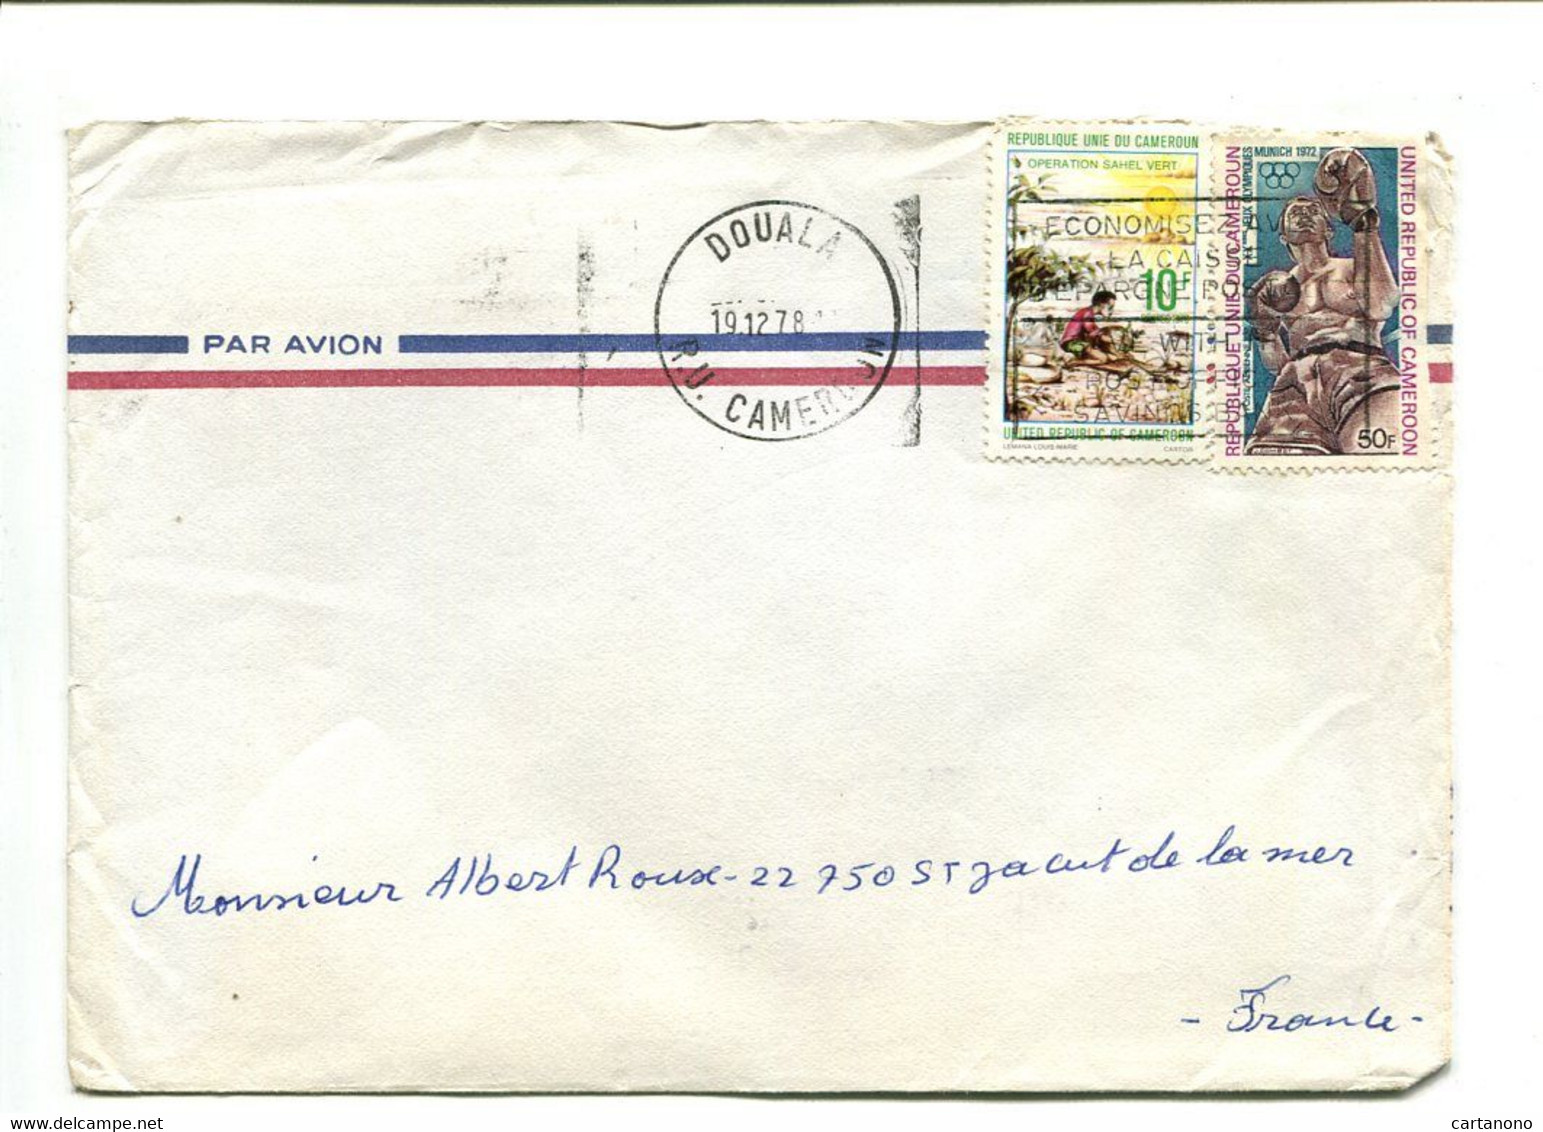 CAMEROUN Yaounde 1979 - Affranchissement Sur Lettre Par Avion - - Kamerun (1960-...)